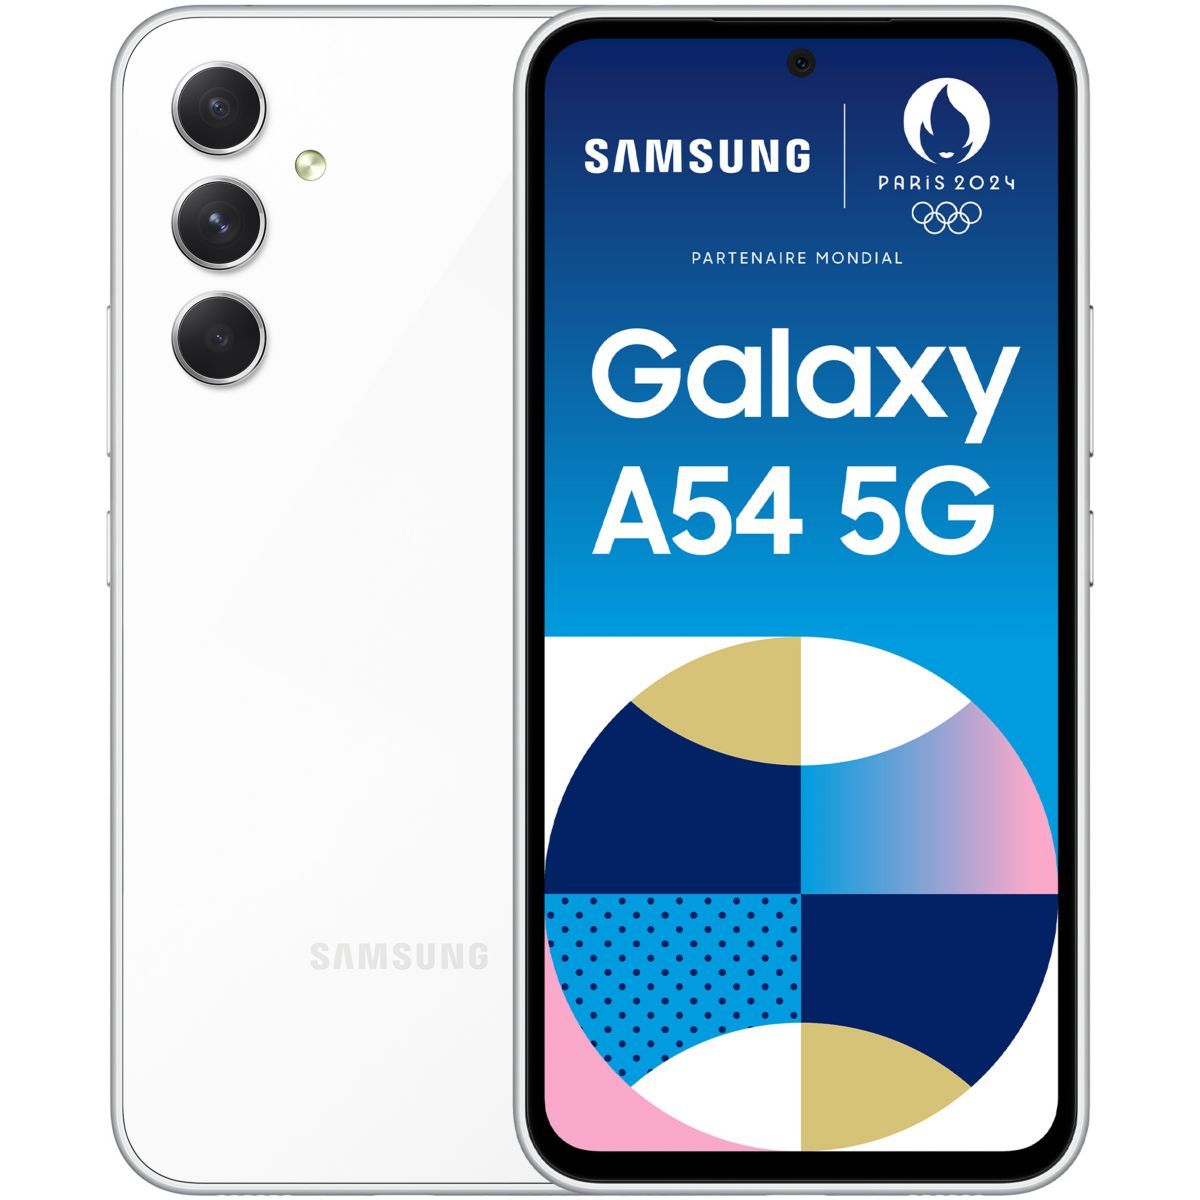 Samsung Galaxy A54 5G 256Go Noir - Détails et prix du mobile